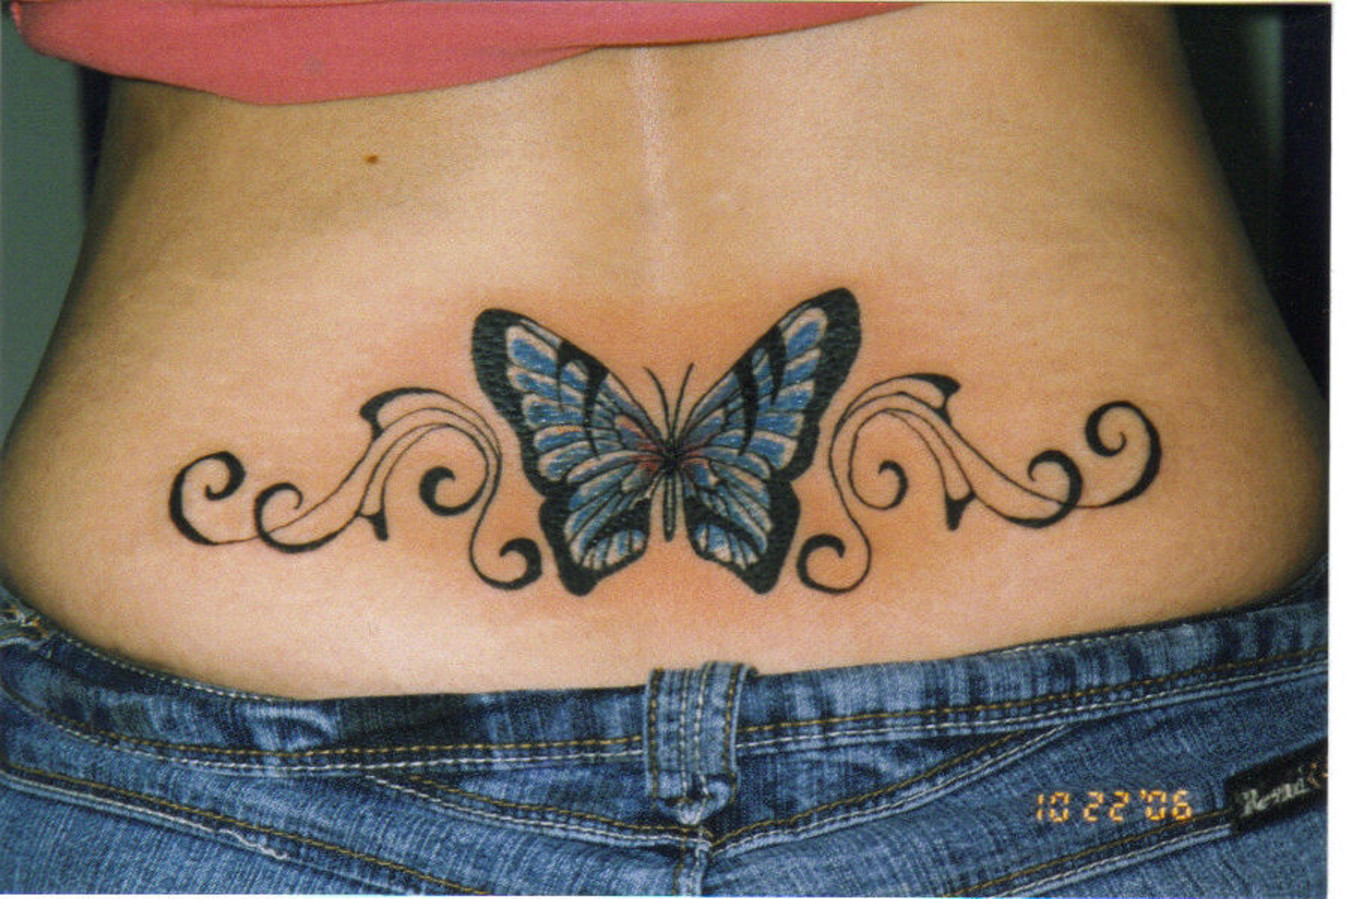 http://2.bp.blogspot.com/-MXF7T47OMG8/TrzIhmC80rI/AAAAAAAAGlU/lscDNA0ESSk/s1600/Butterfly+Tattoos+%252828%2529.jpg